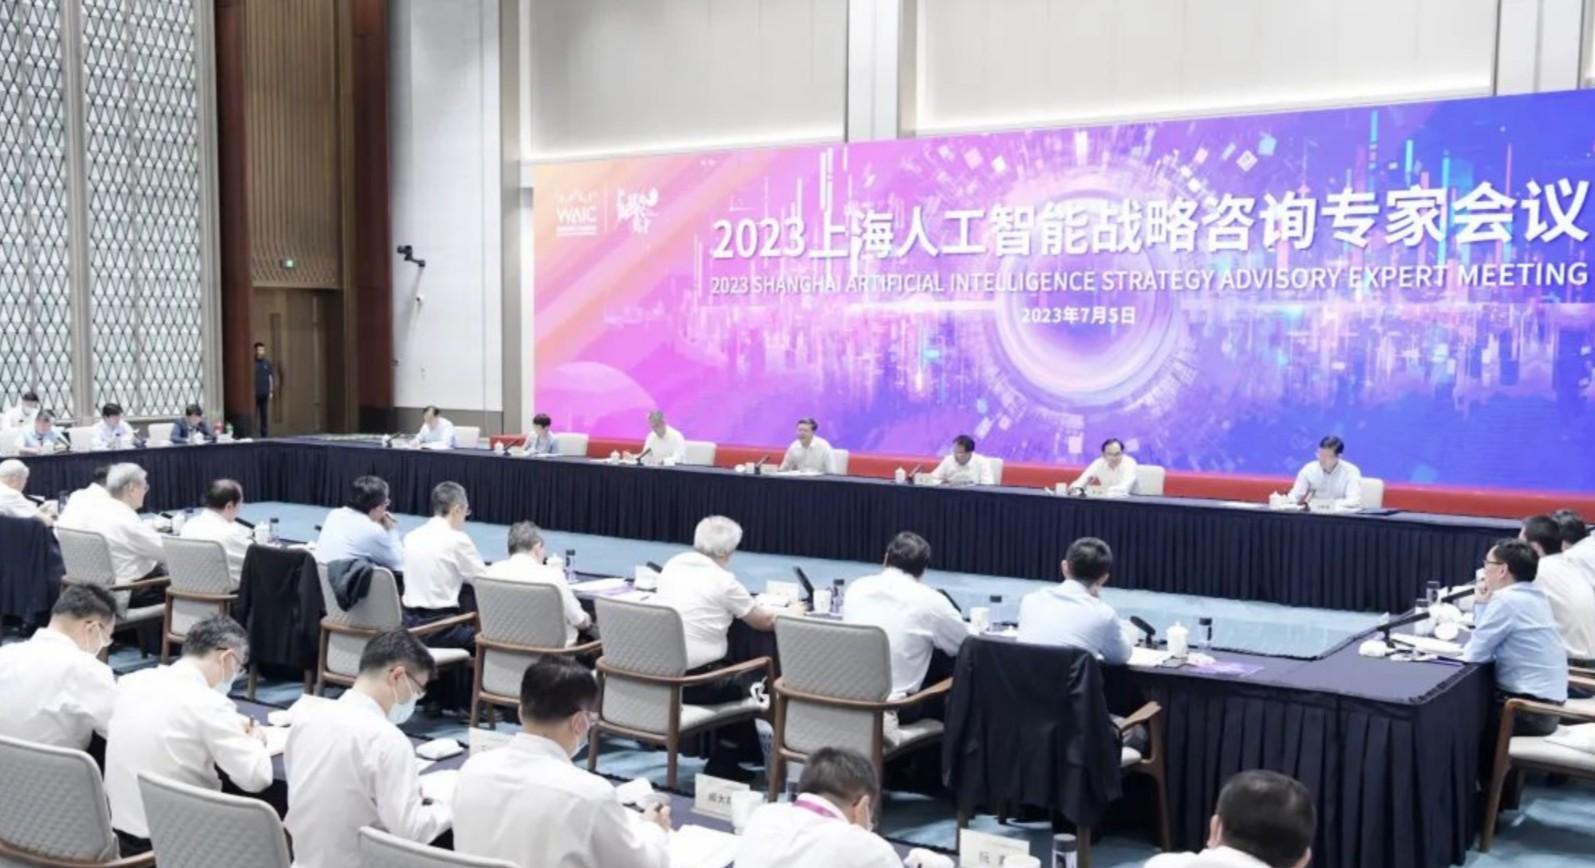 上海人工智能战略咨询专家会议举行，陈吉宁龚正与这些大咖深入交流